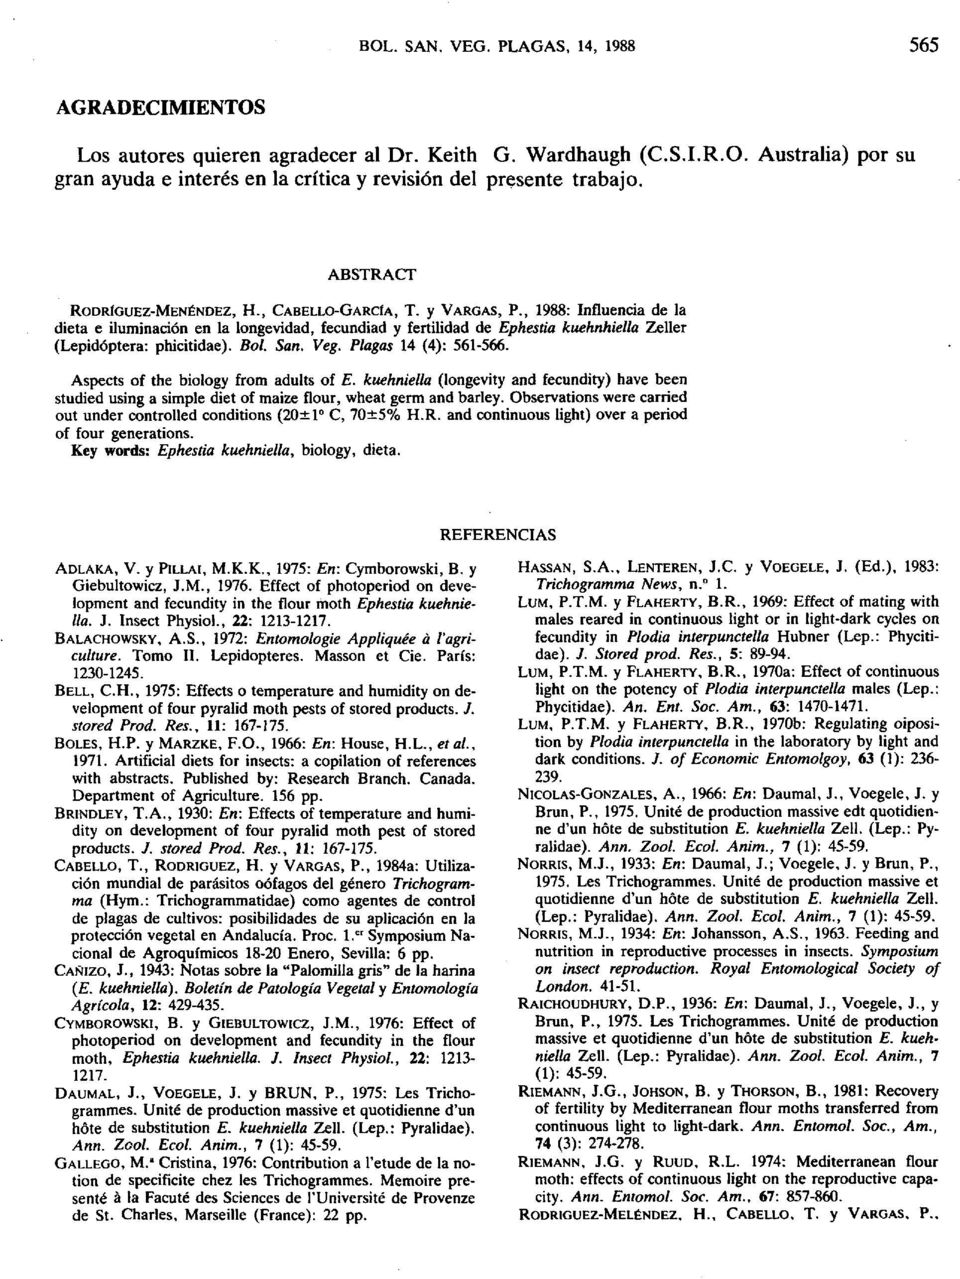 , 1988: Influencia de la dieta e iluminación en la longevidad, fecundiad y fertilidad de Ephestia kuehnhiella Zeller (Lepidóptera: phicitidae). Bol. San. Veg. Plagas 14 (4): 561-566.